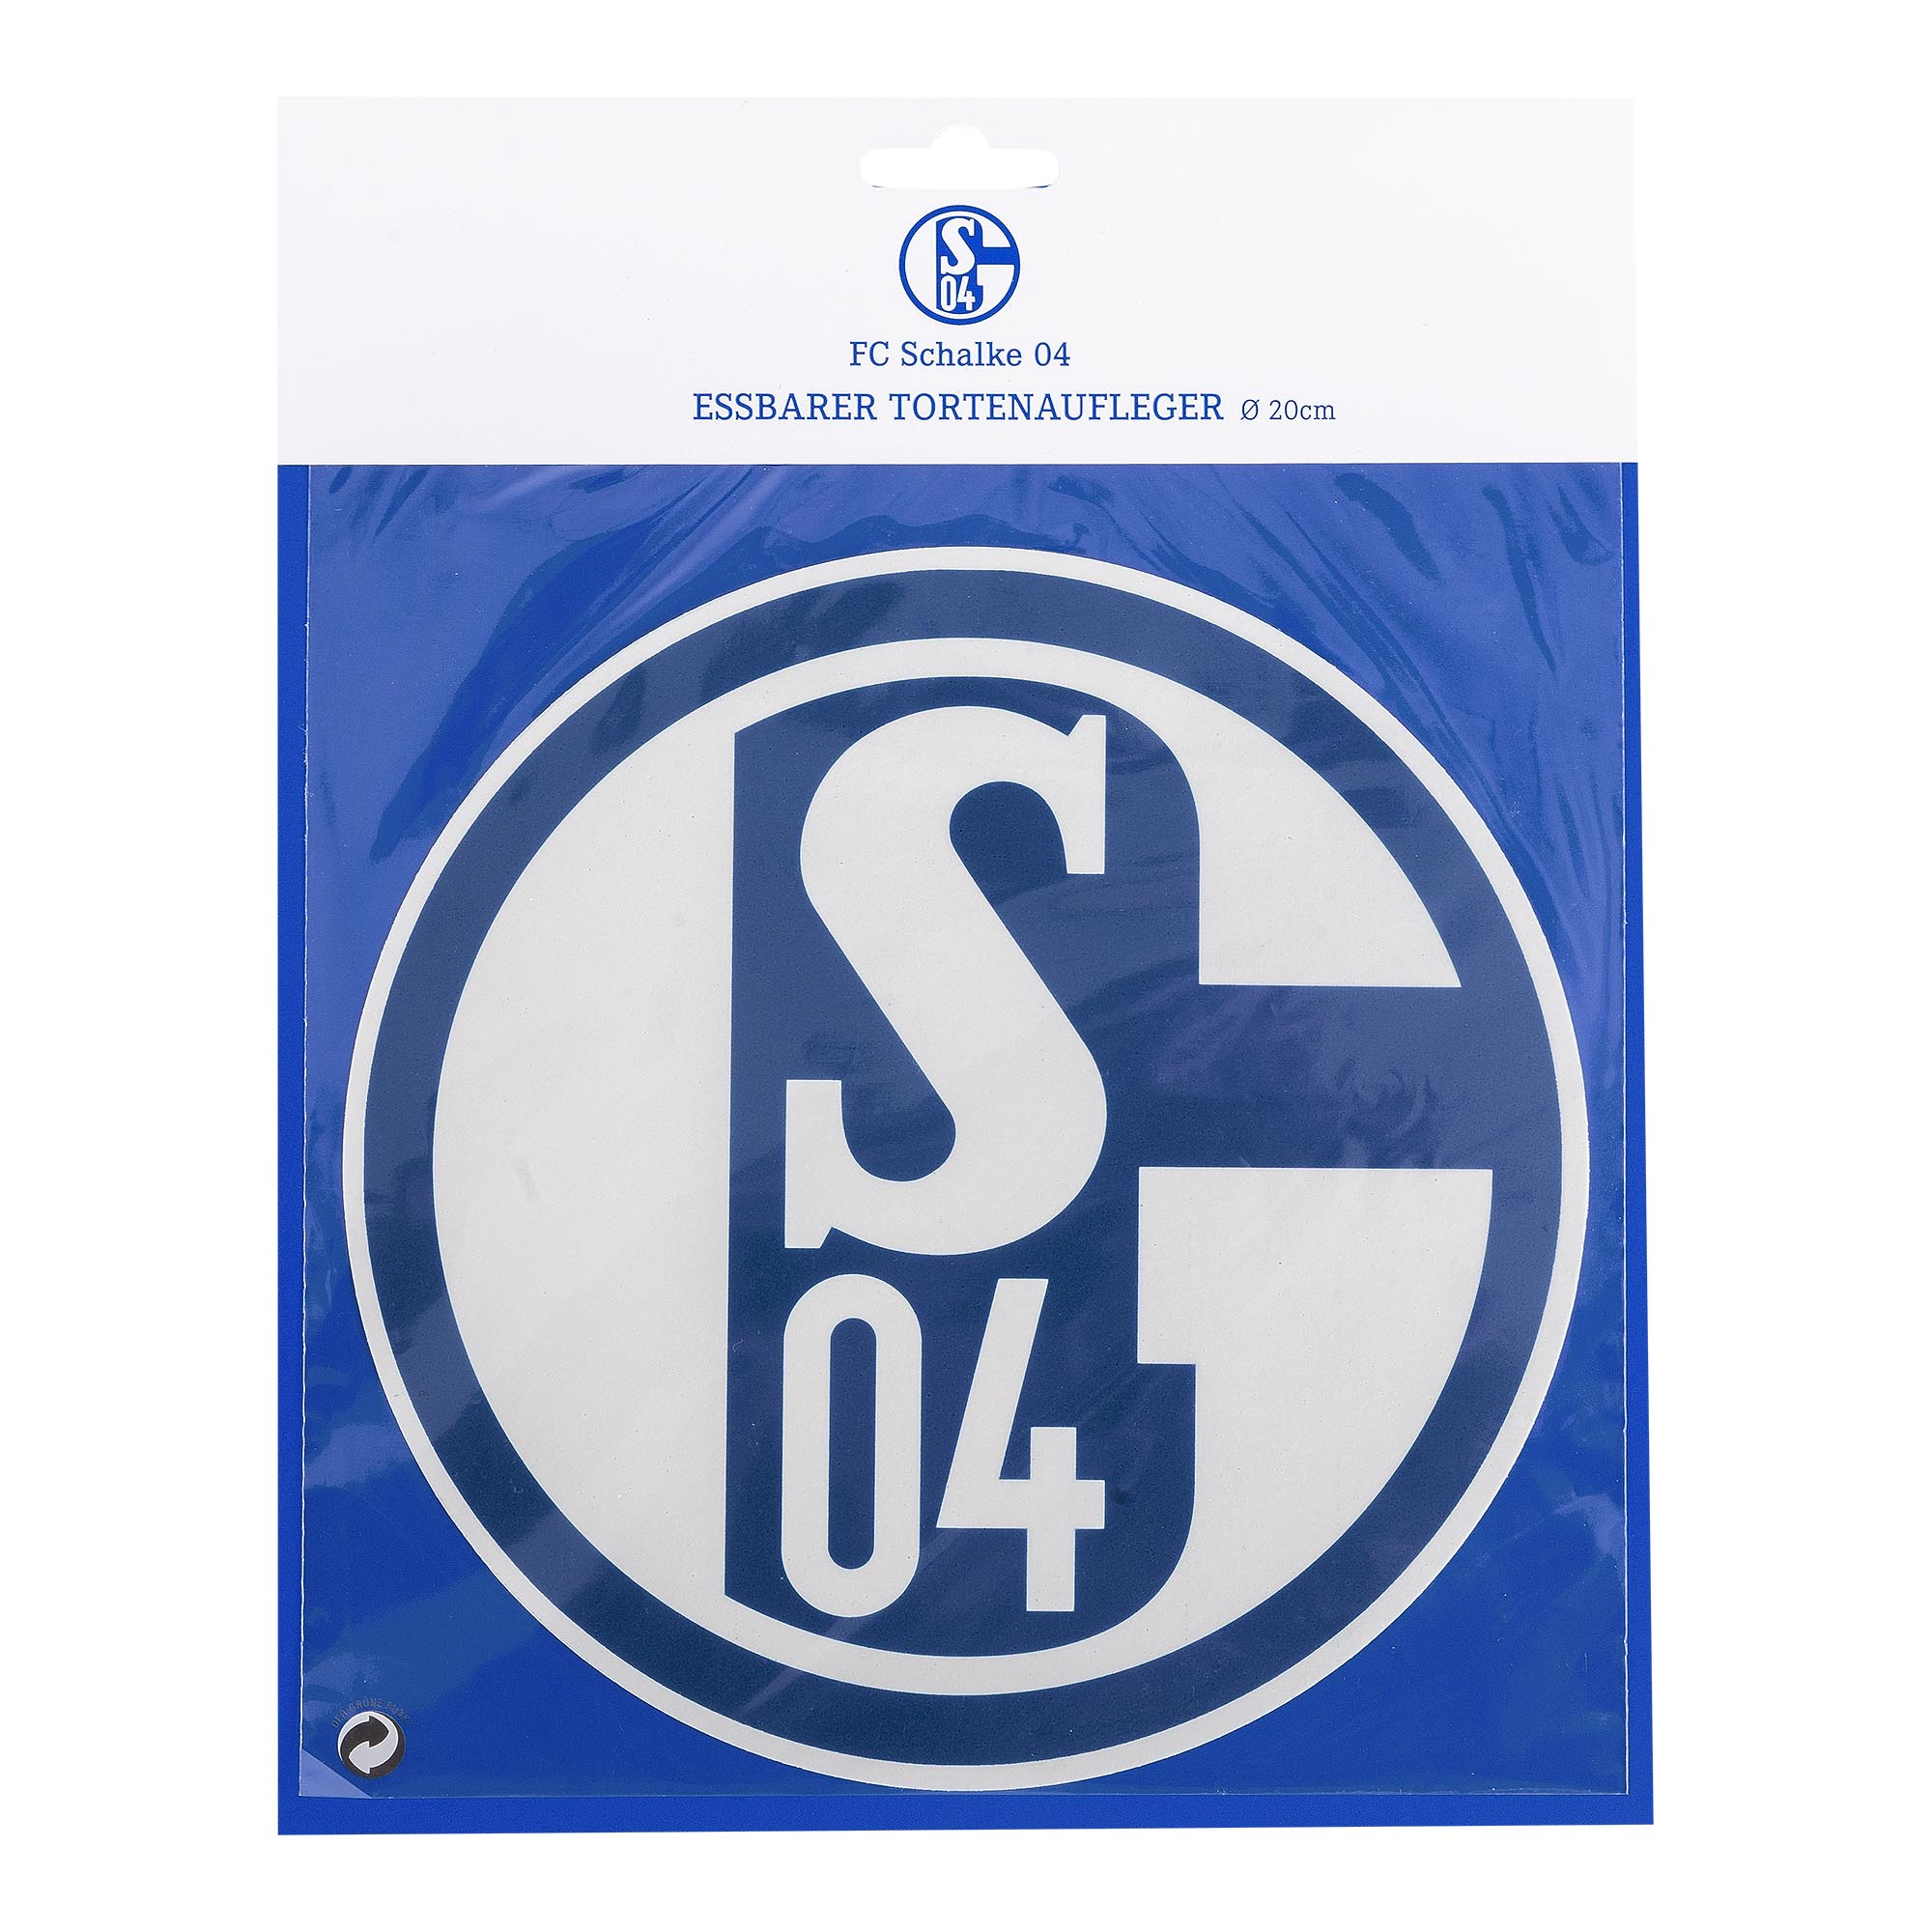 Alle Schalke 04 tortenaufleger auf einen Blick